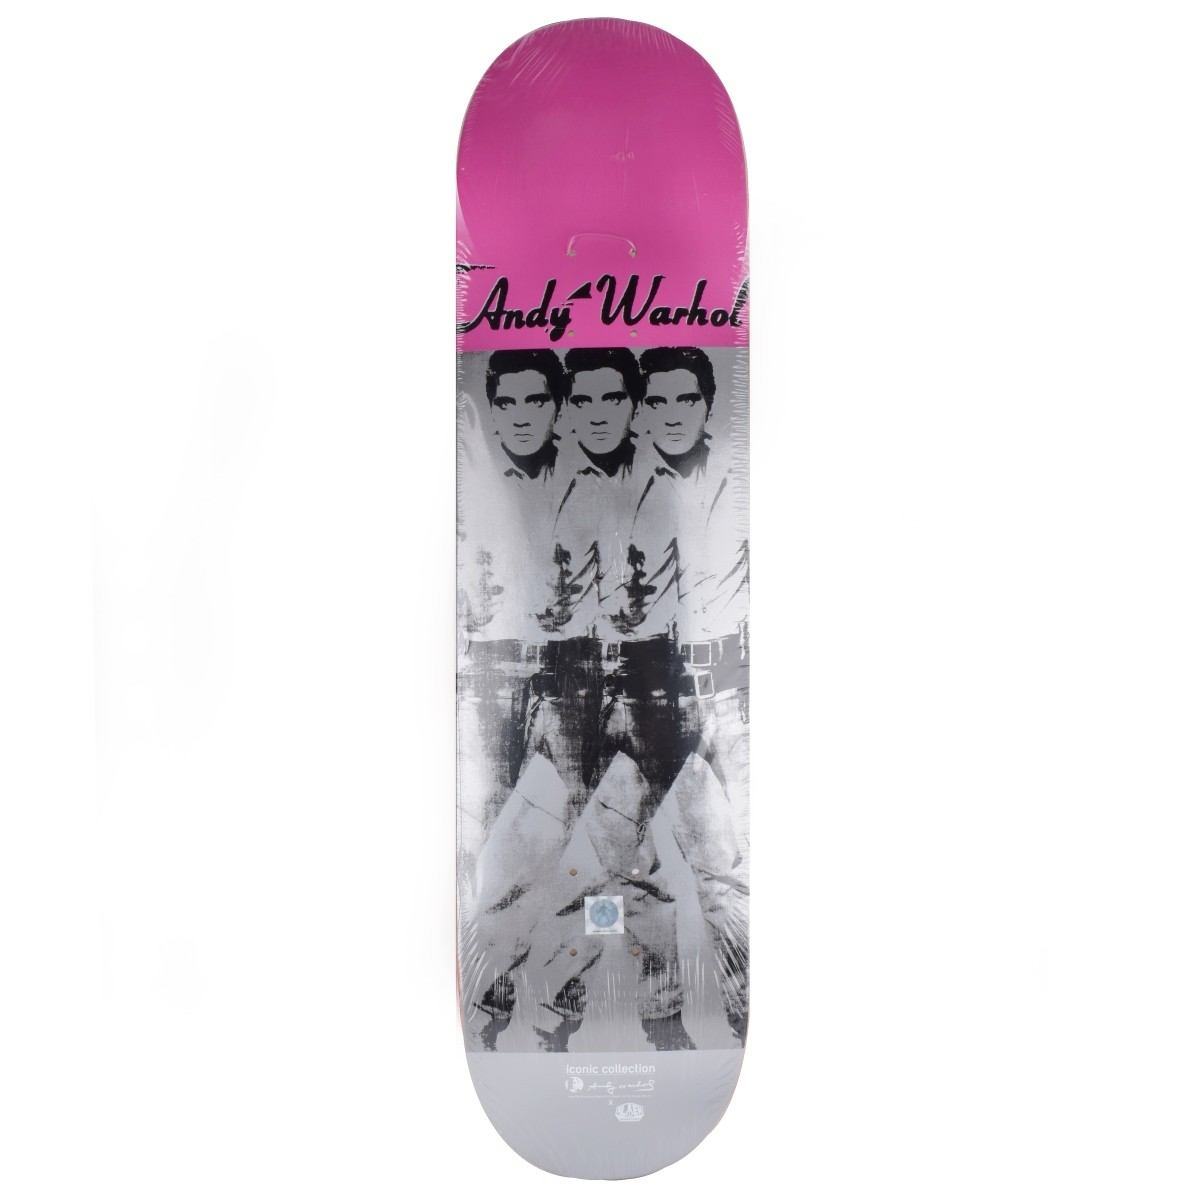 Alien Workshop x Andy Warhol Skateboard Deck